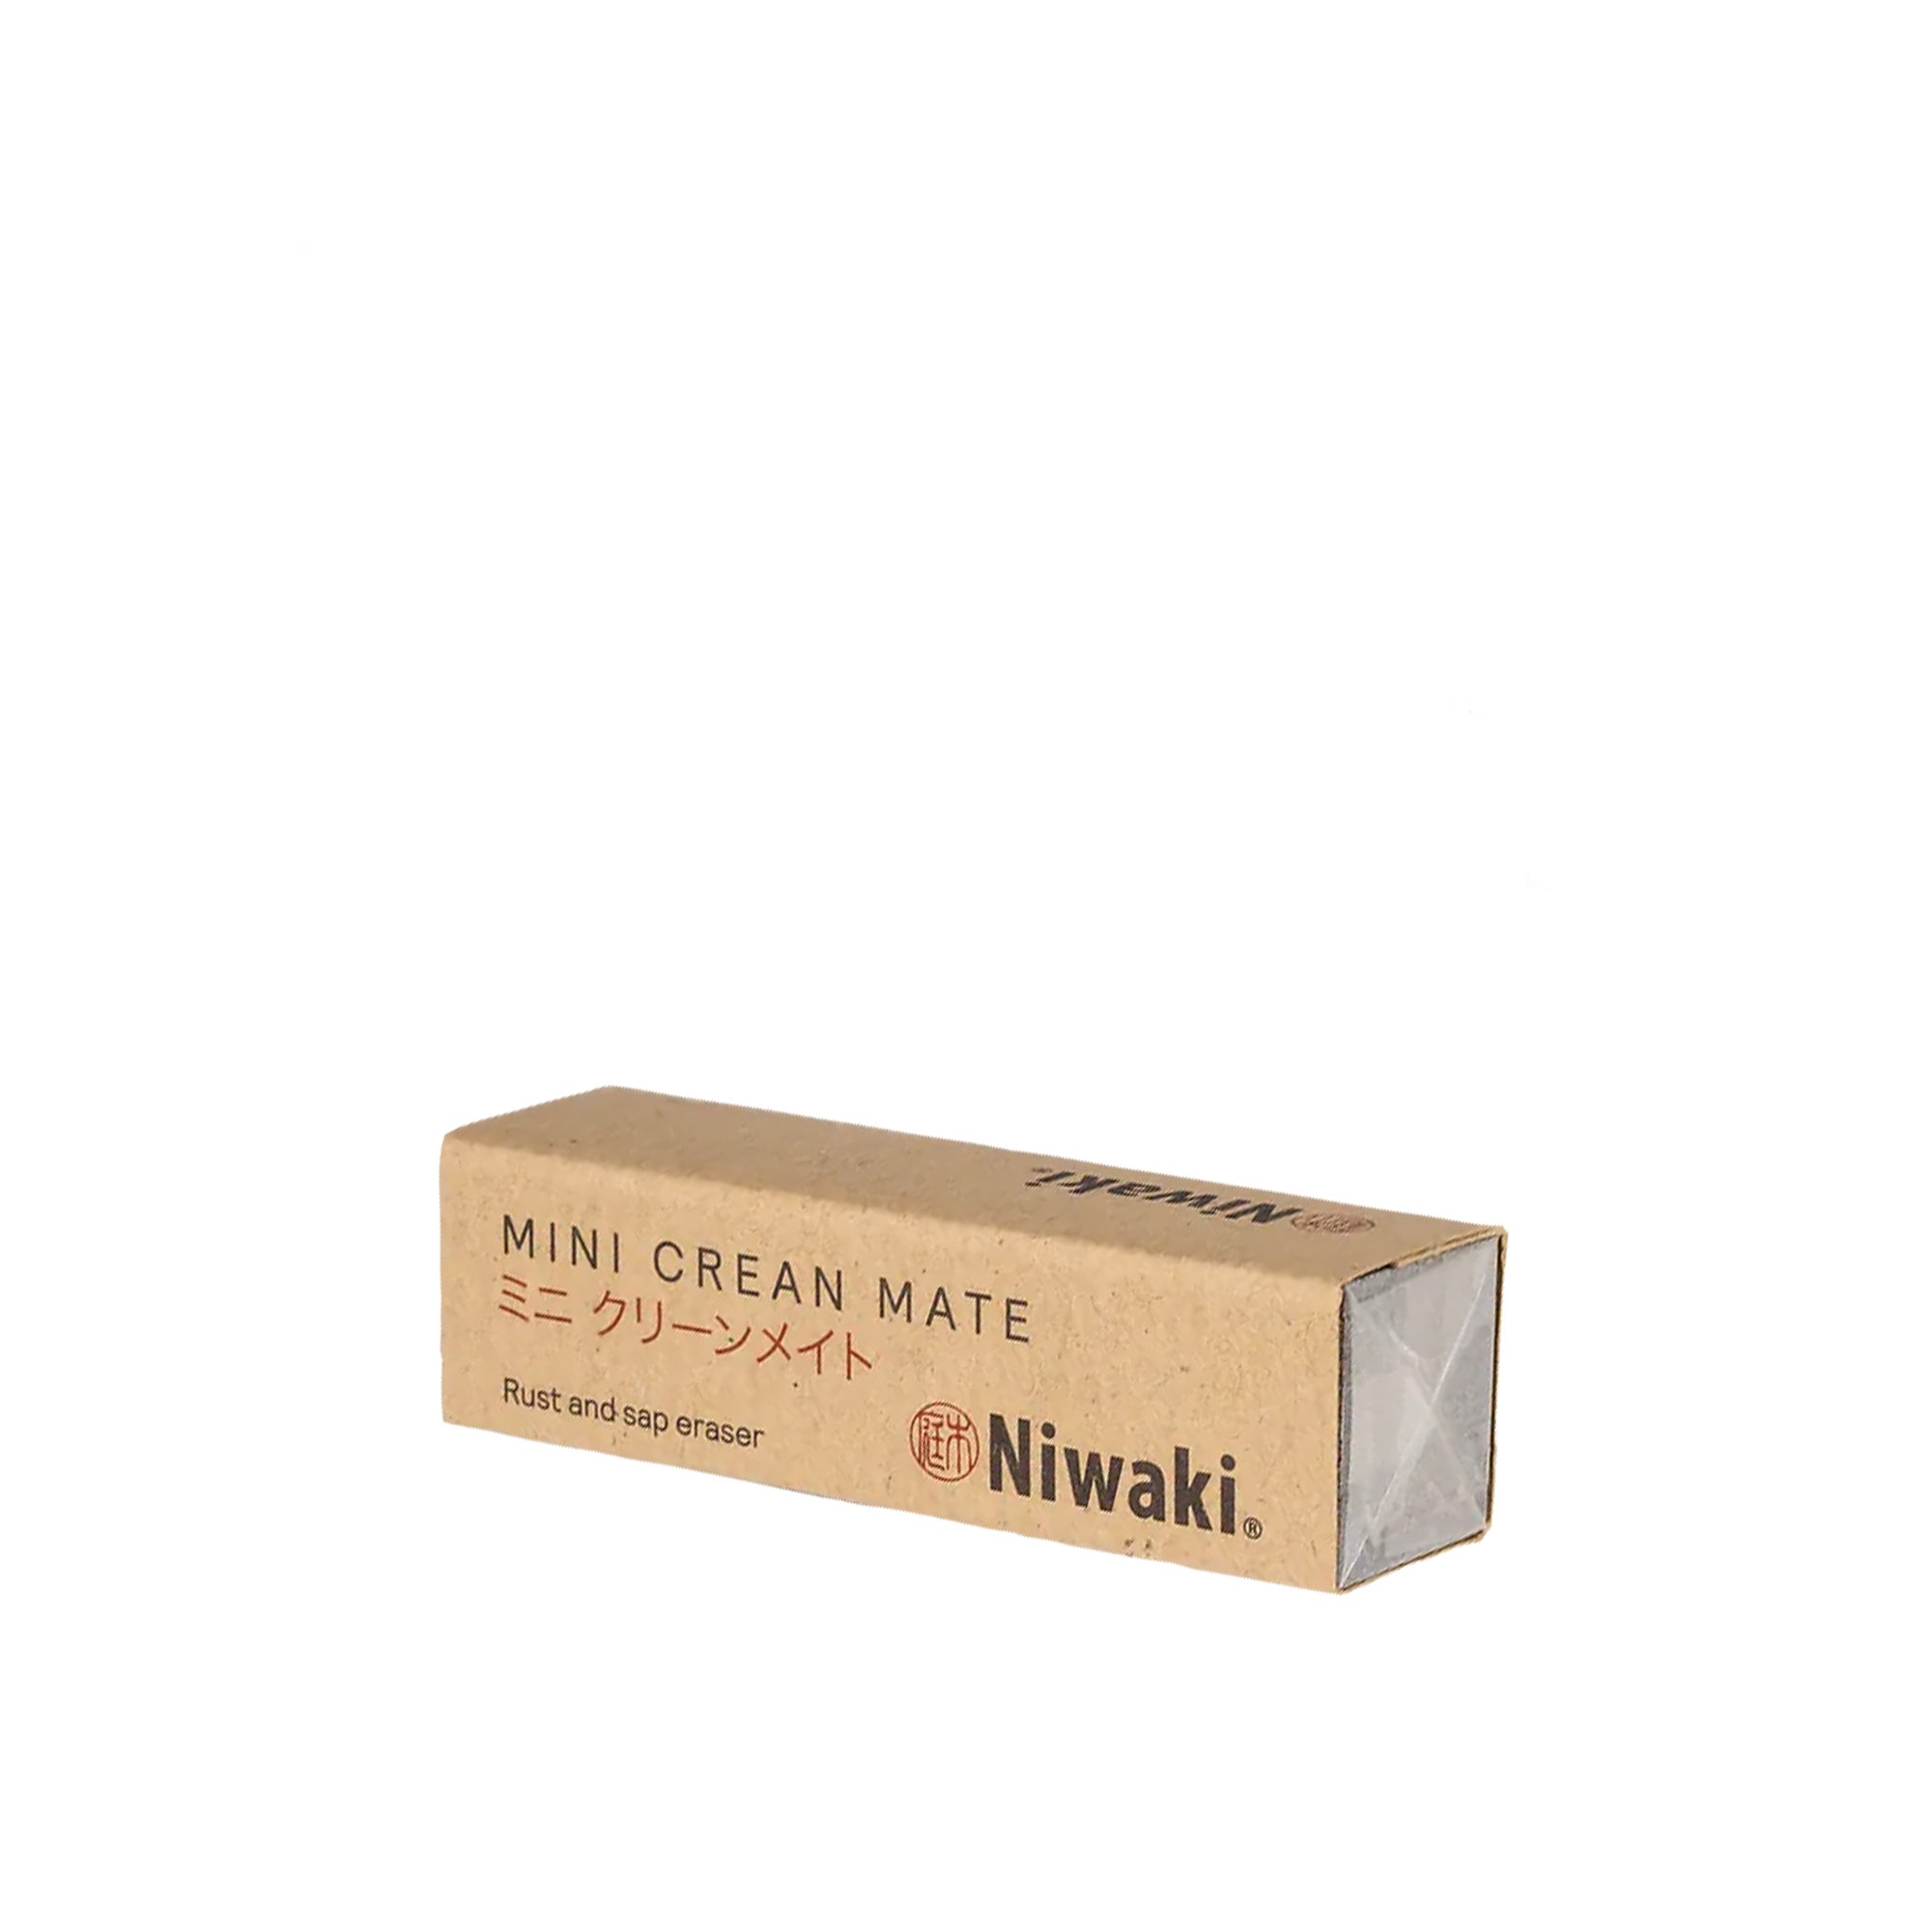 Mini Crean Mate, Rust Eraser